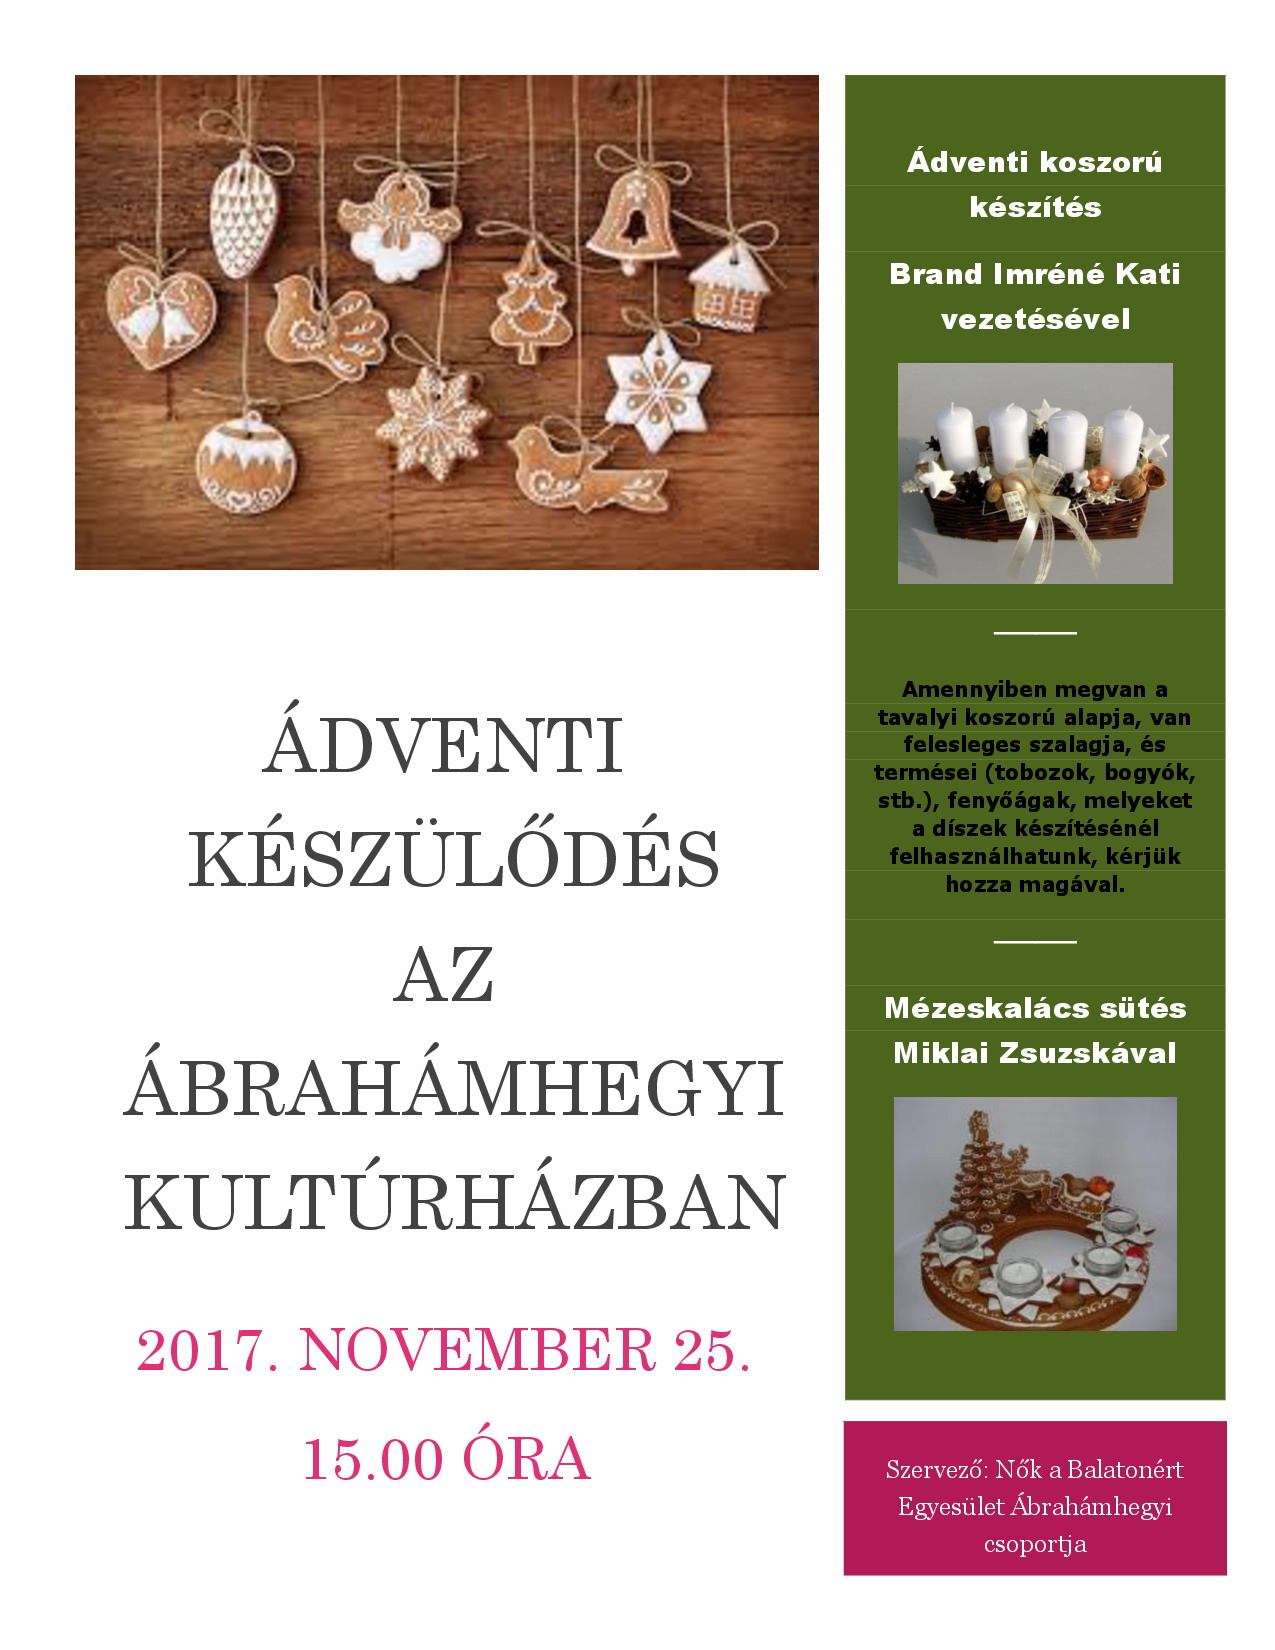 Ábrahámhegy - Adventi előkészületek 2017. november 25.-én